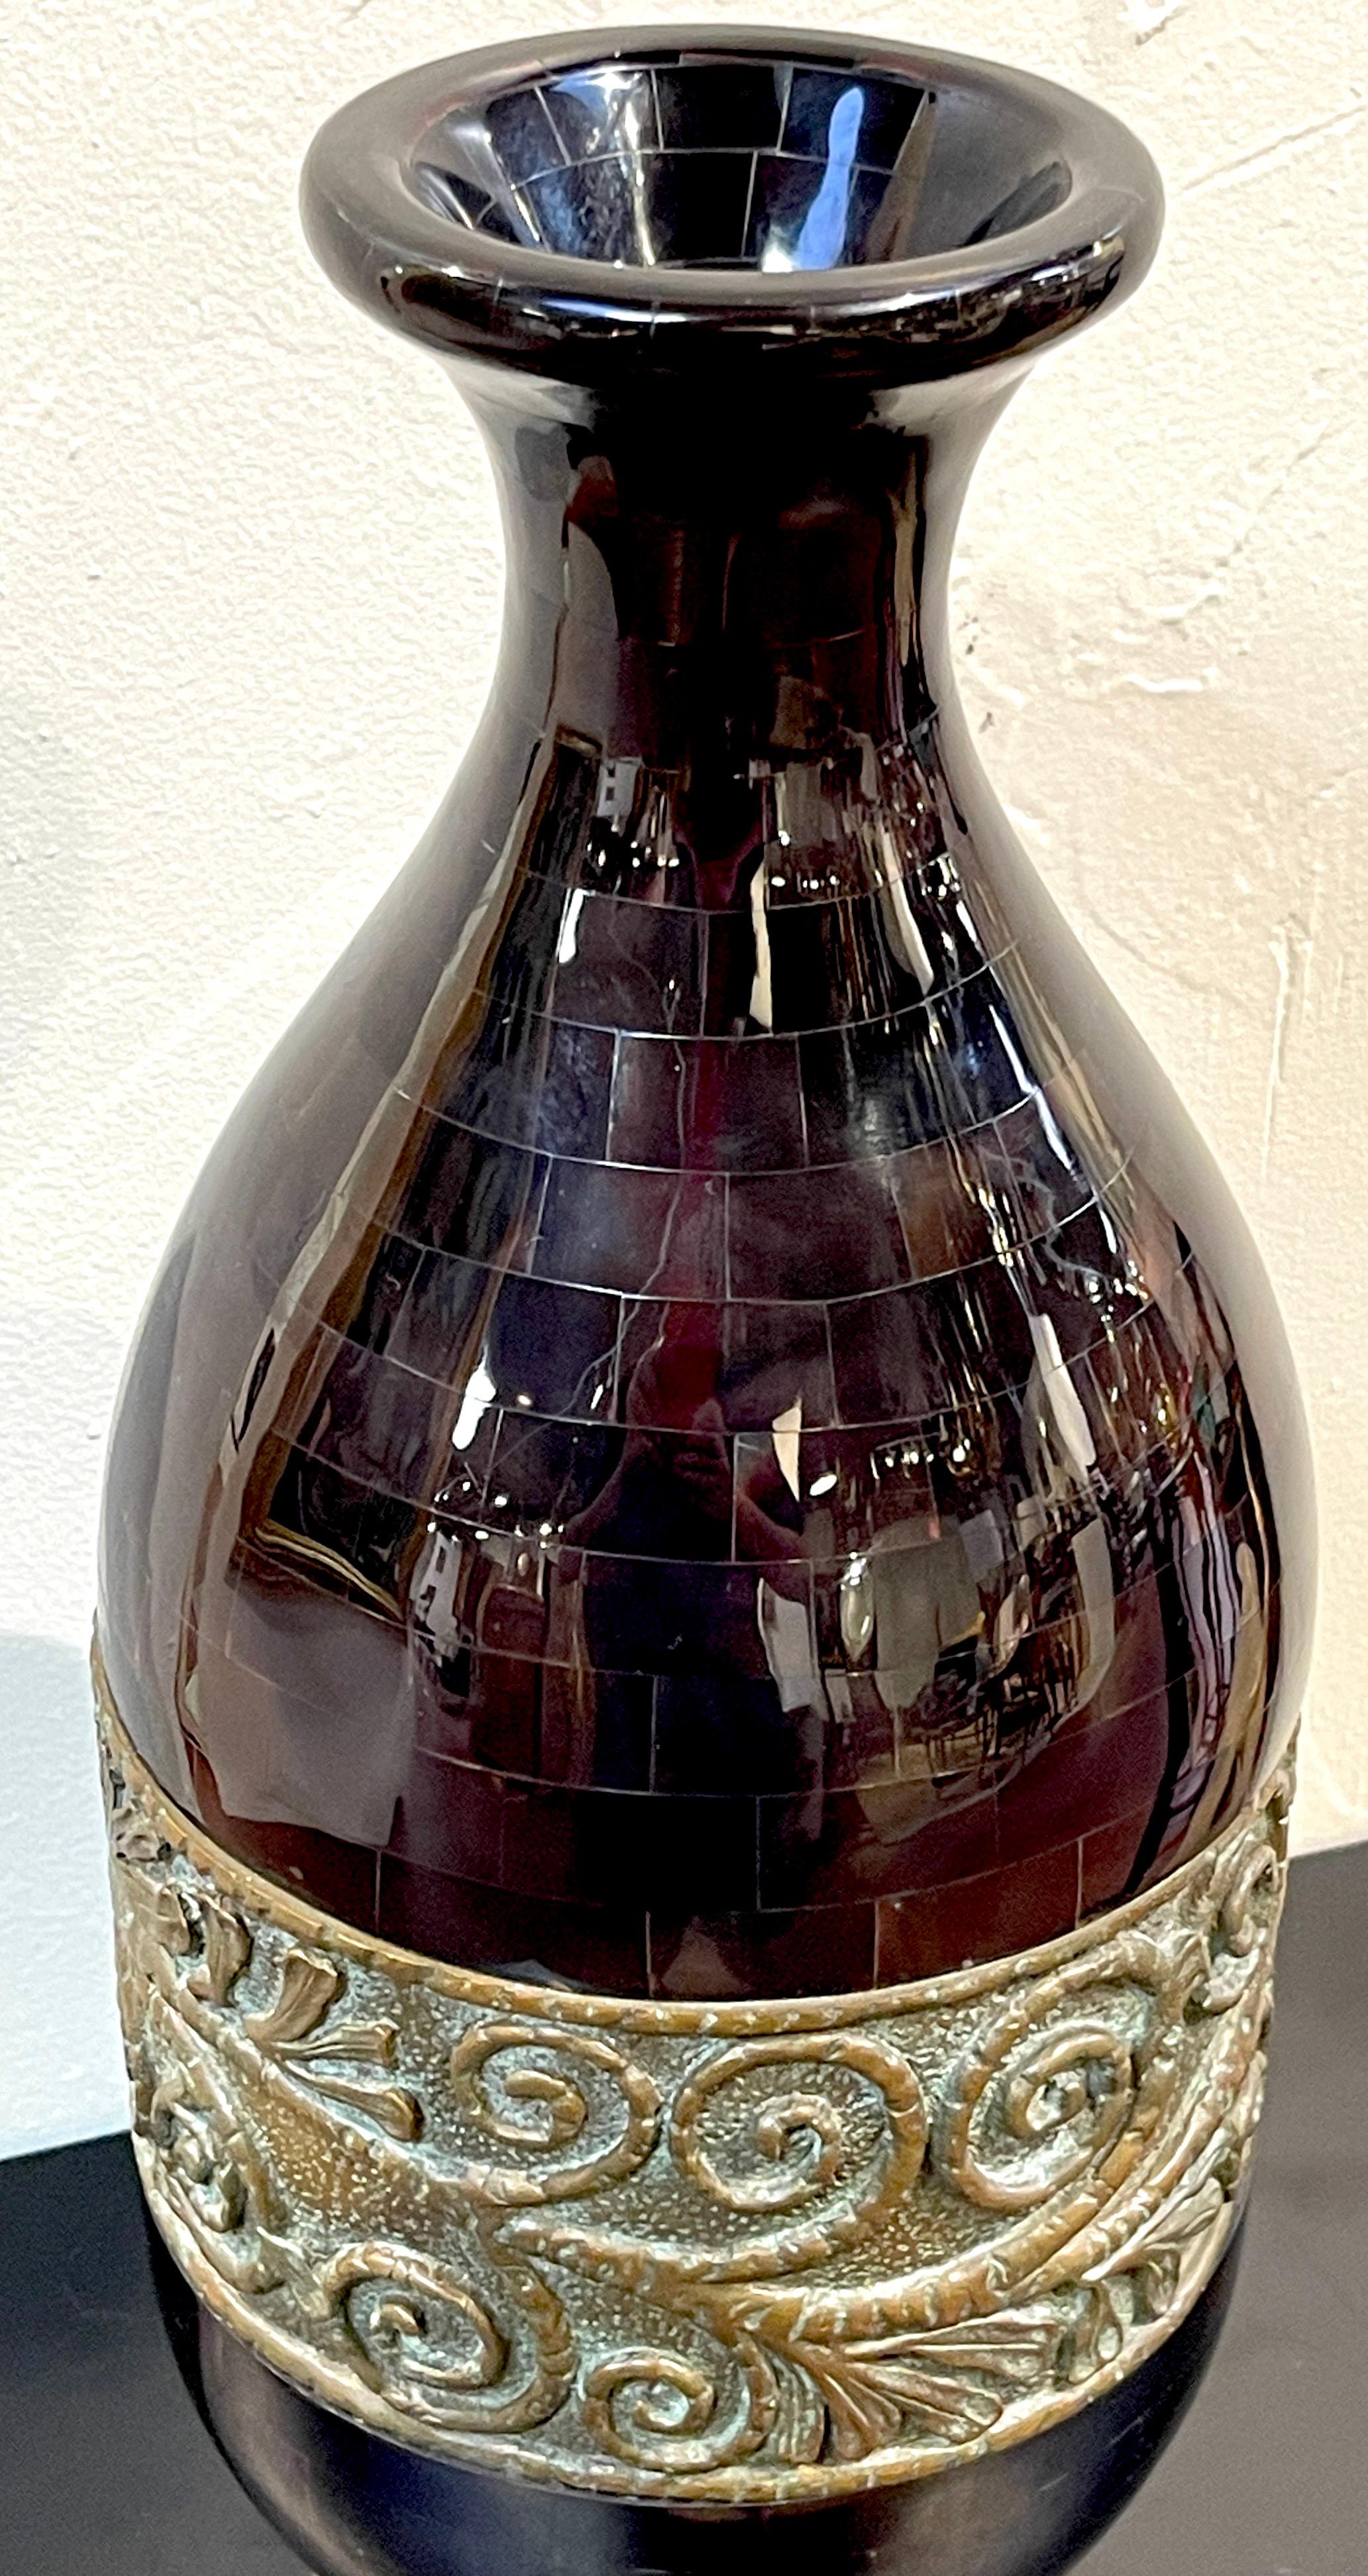 Moderne Vase aus poliertem Horn und patinierter Bronze von Maitland Smith 
Erhöhen Sie Ihr Interieur  mit dieser modernen Vase aus poliertem Horn und patinierter Bronze, einer auffälligen Vase von Maitland Smith. Diese Vase verkörpert